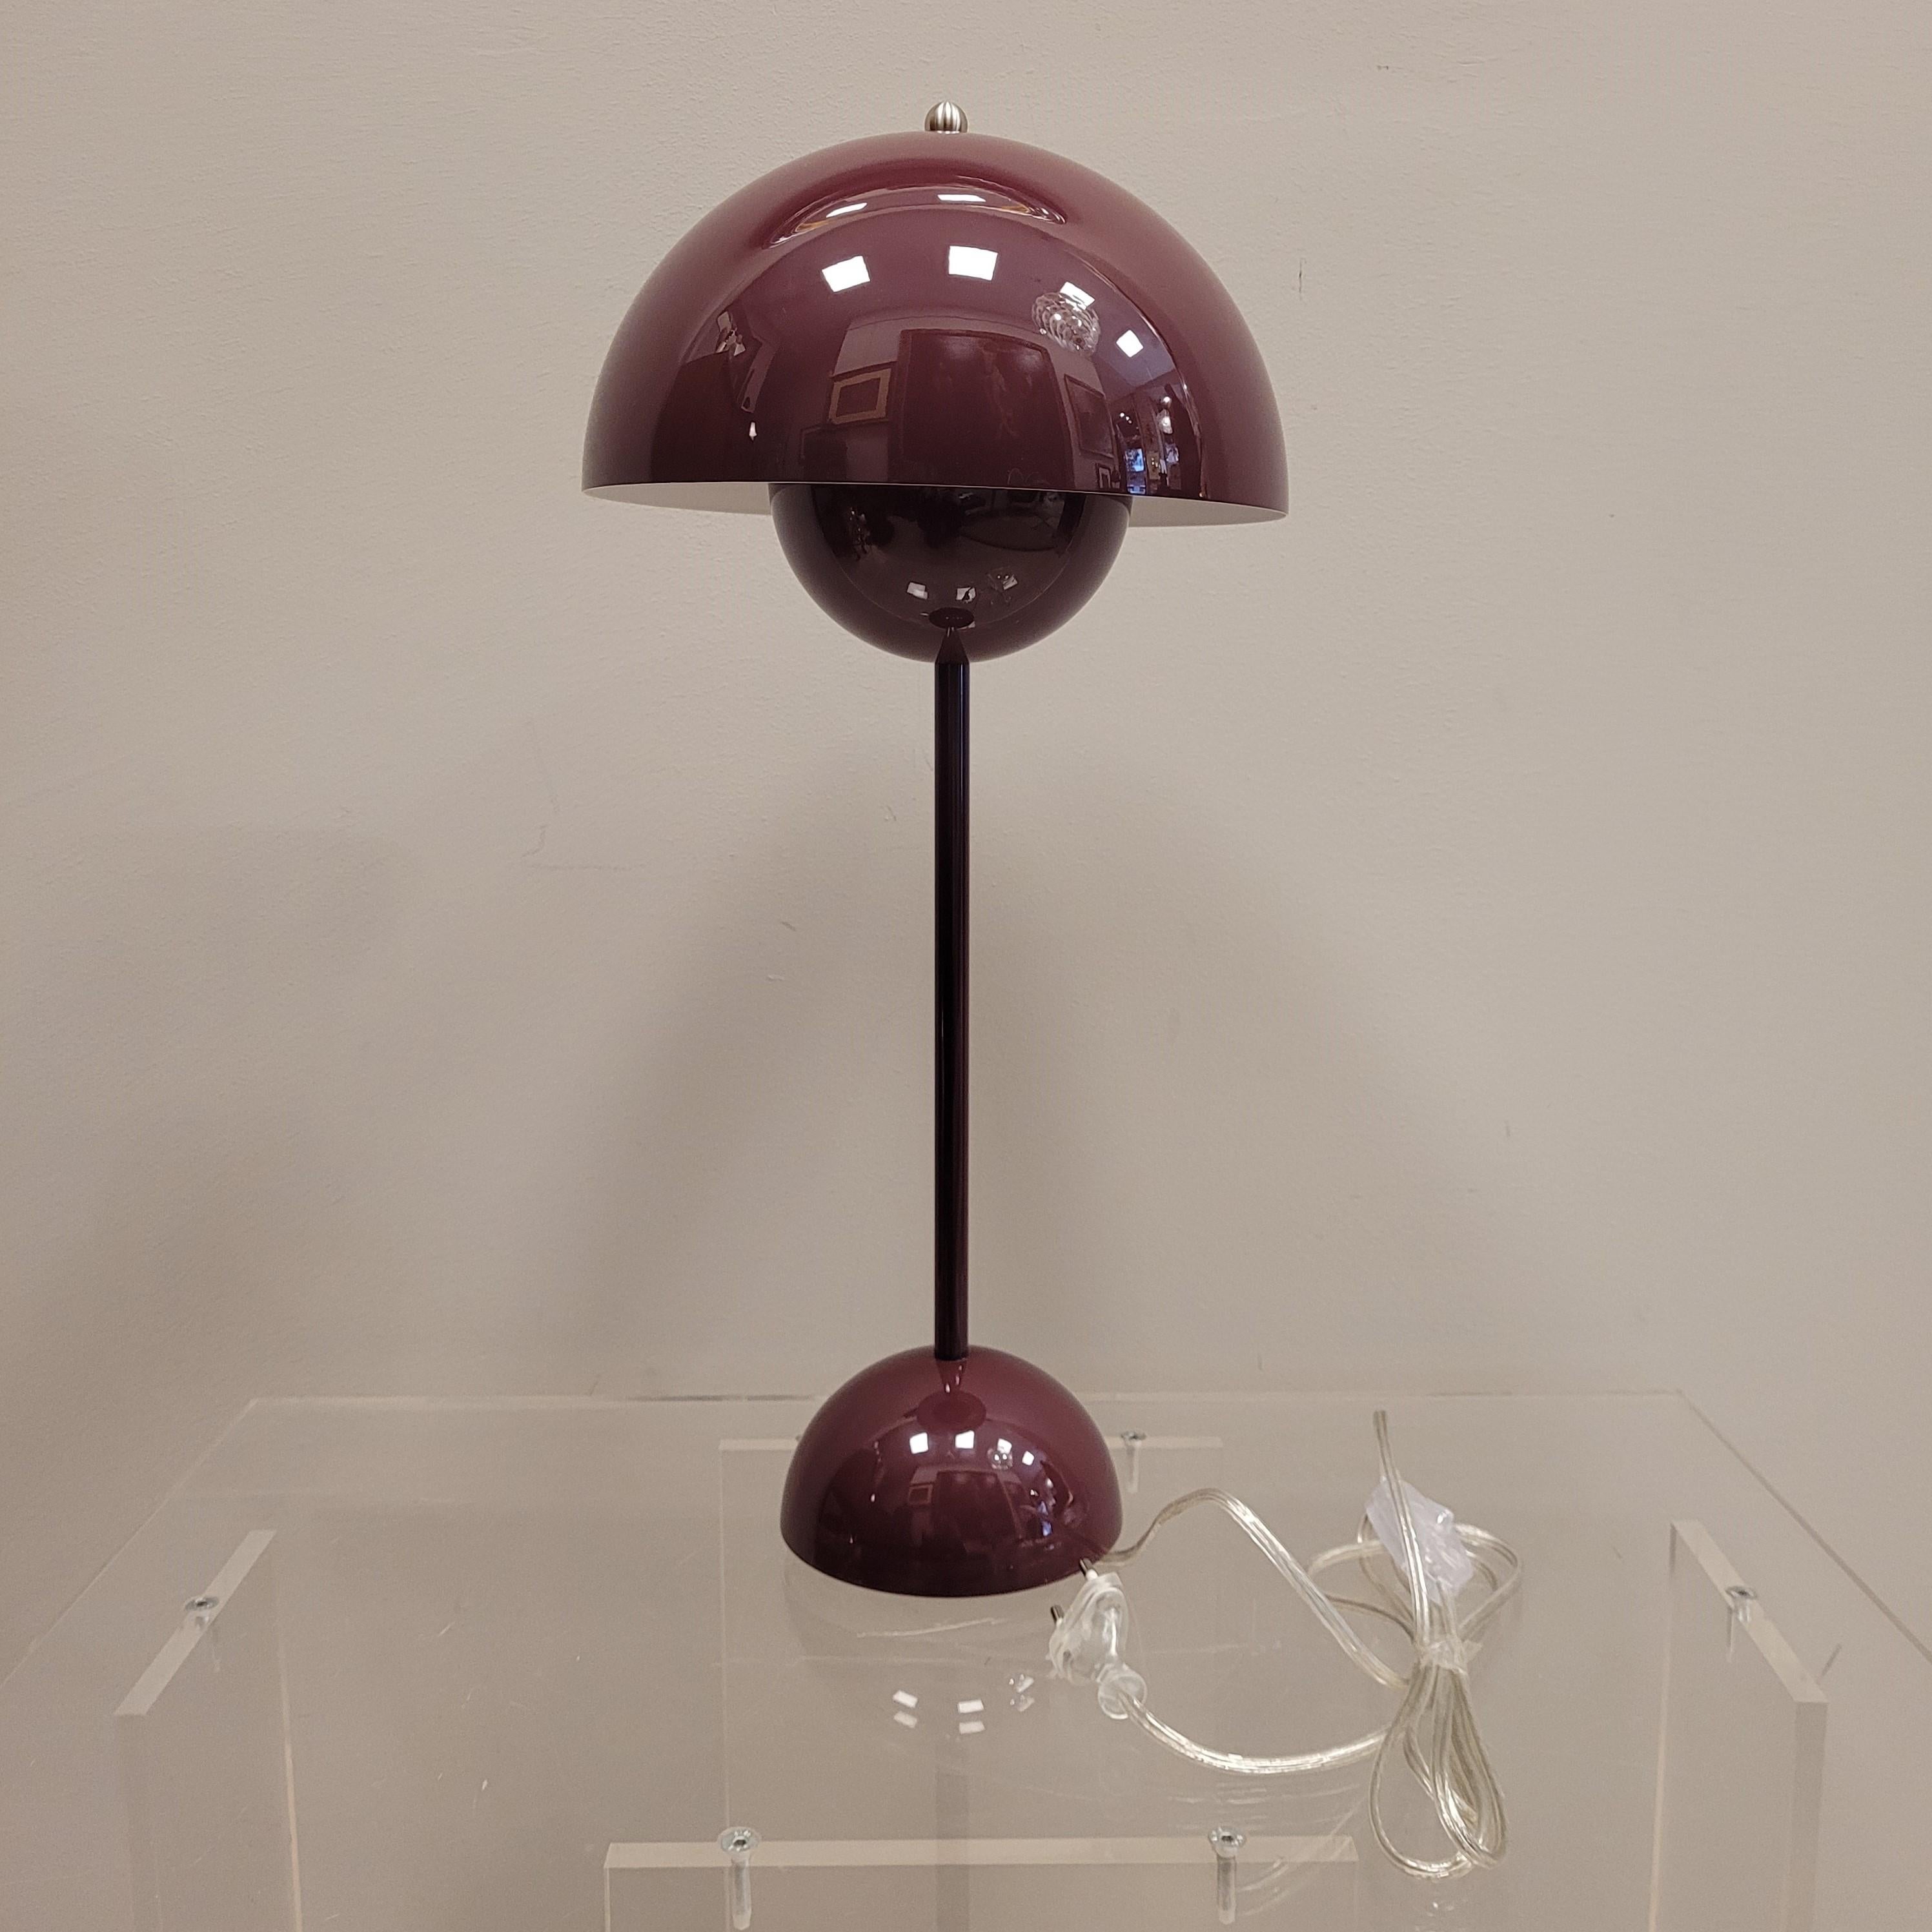 Magnifique lampe Design/One pour &Tradition, 1968 dans une seule couleur Bourgogne. Edition des années 90
Concept : Verner Panton Flowerpot est une lampe rétro exclusive tout à fait classique, telle qu'elle a été conçue en 1968. La lampe a d'abord